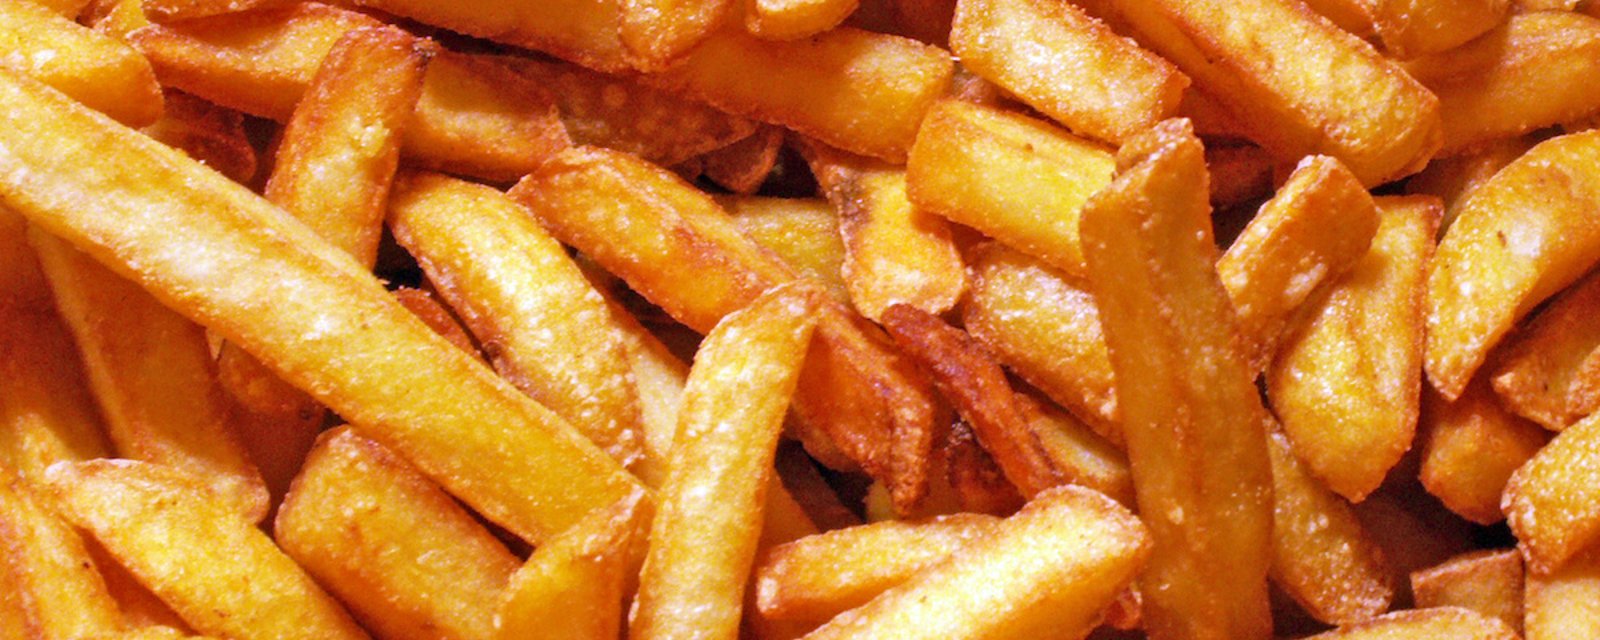 Manger des frites peut aider les producteurs de pommes de terre du Canada pendant la pandémie